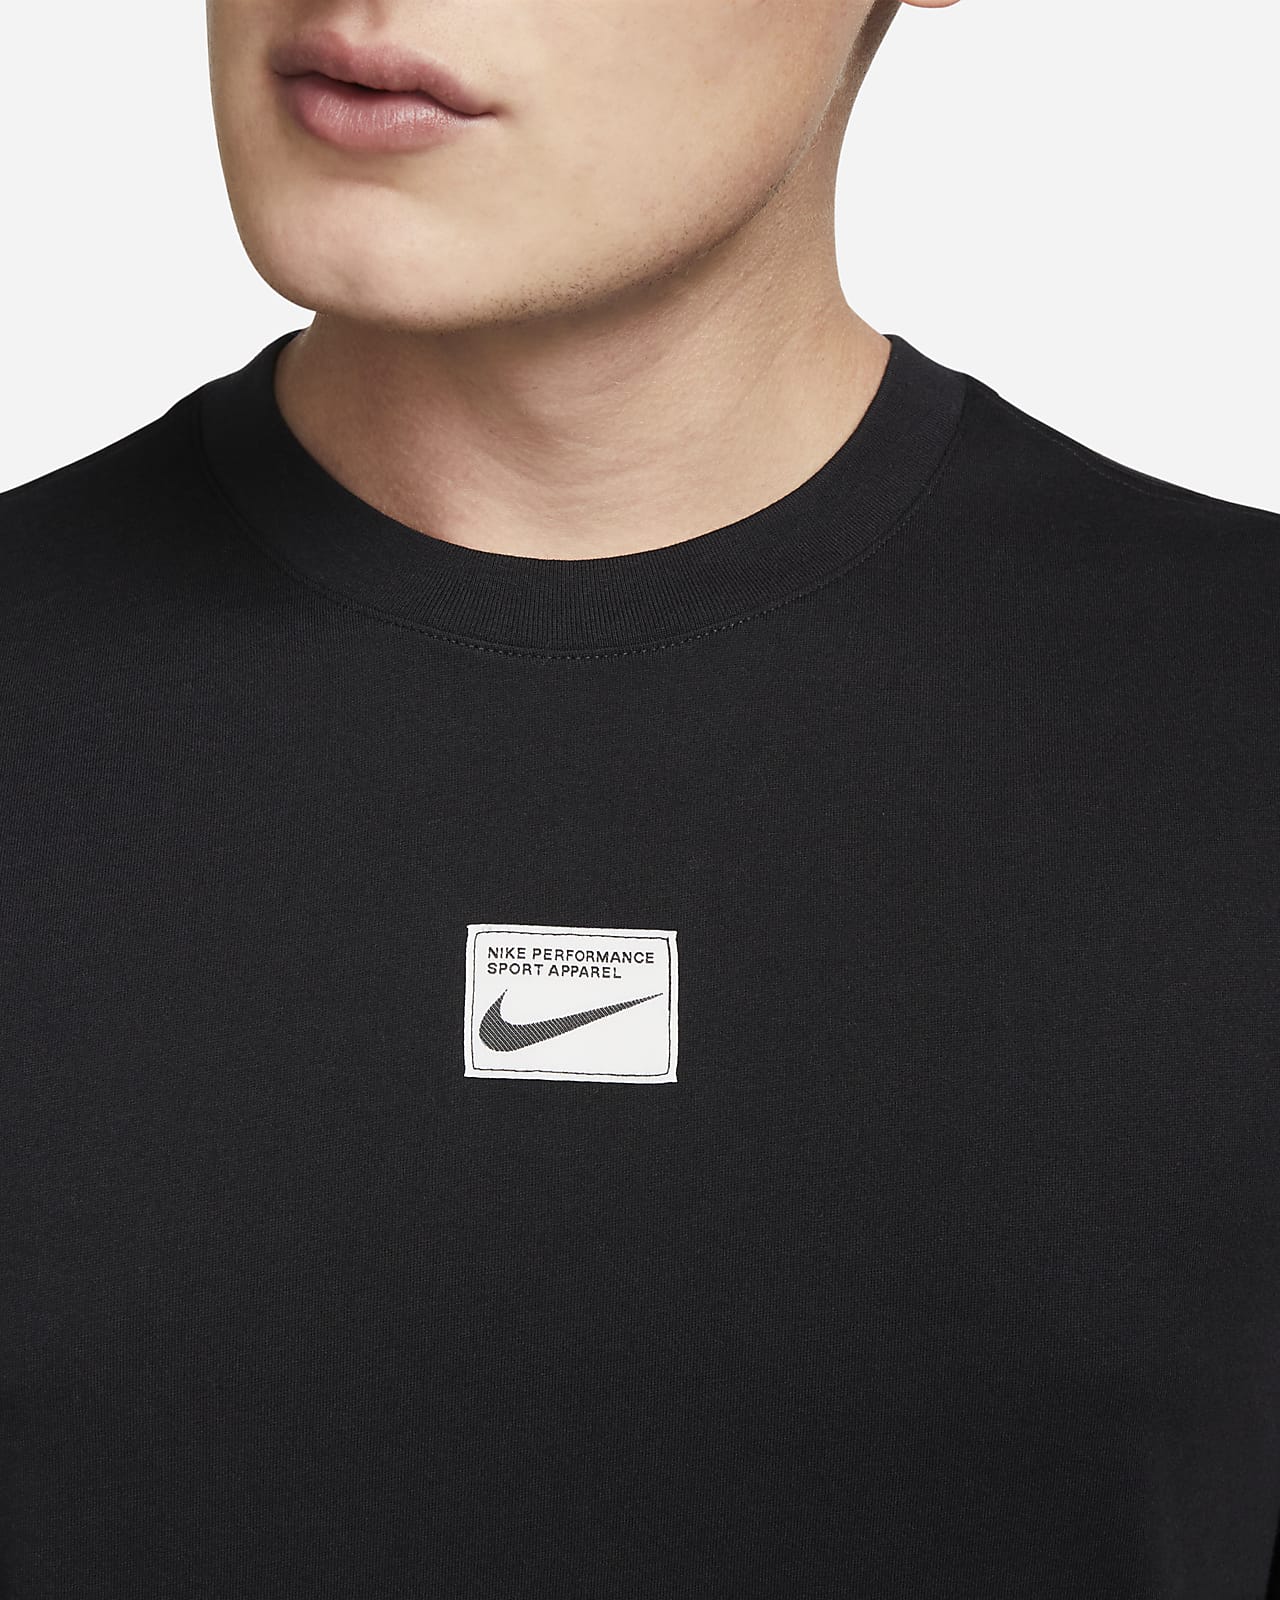 Tranquilizar Una buena amiga creciendo Nike Dri-FIT Men's Fitness T-Shirt. Nike.com